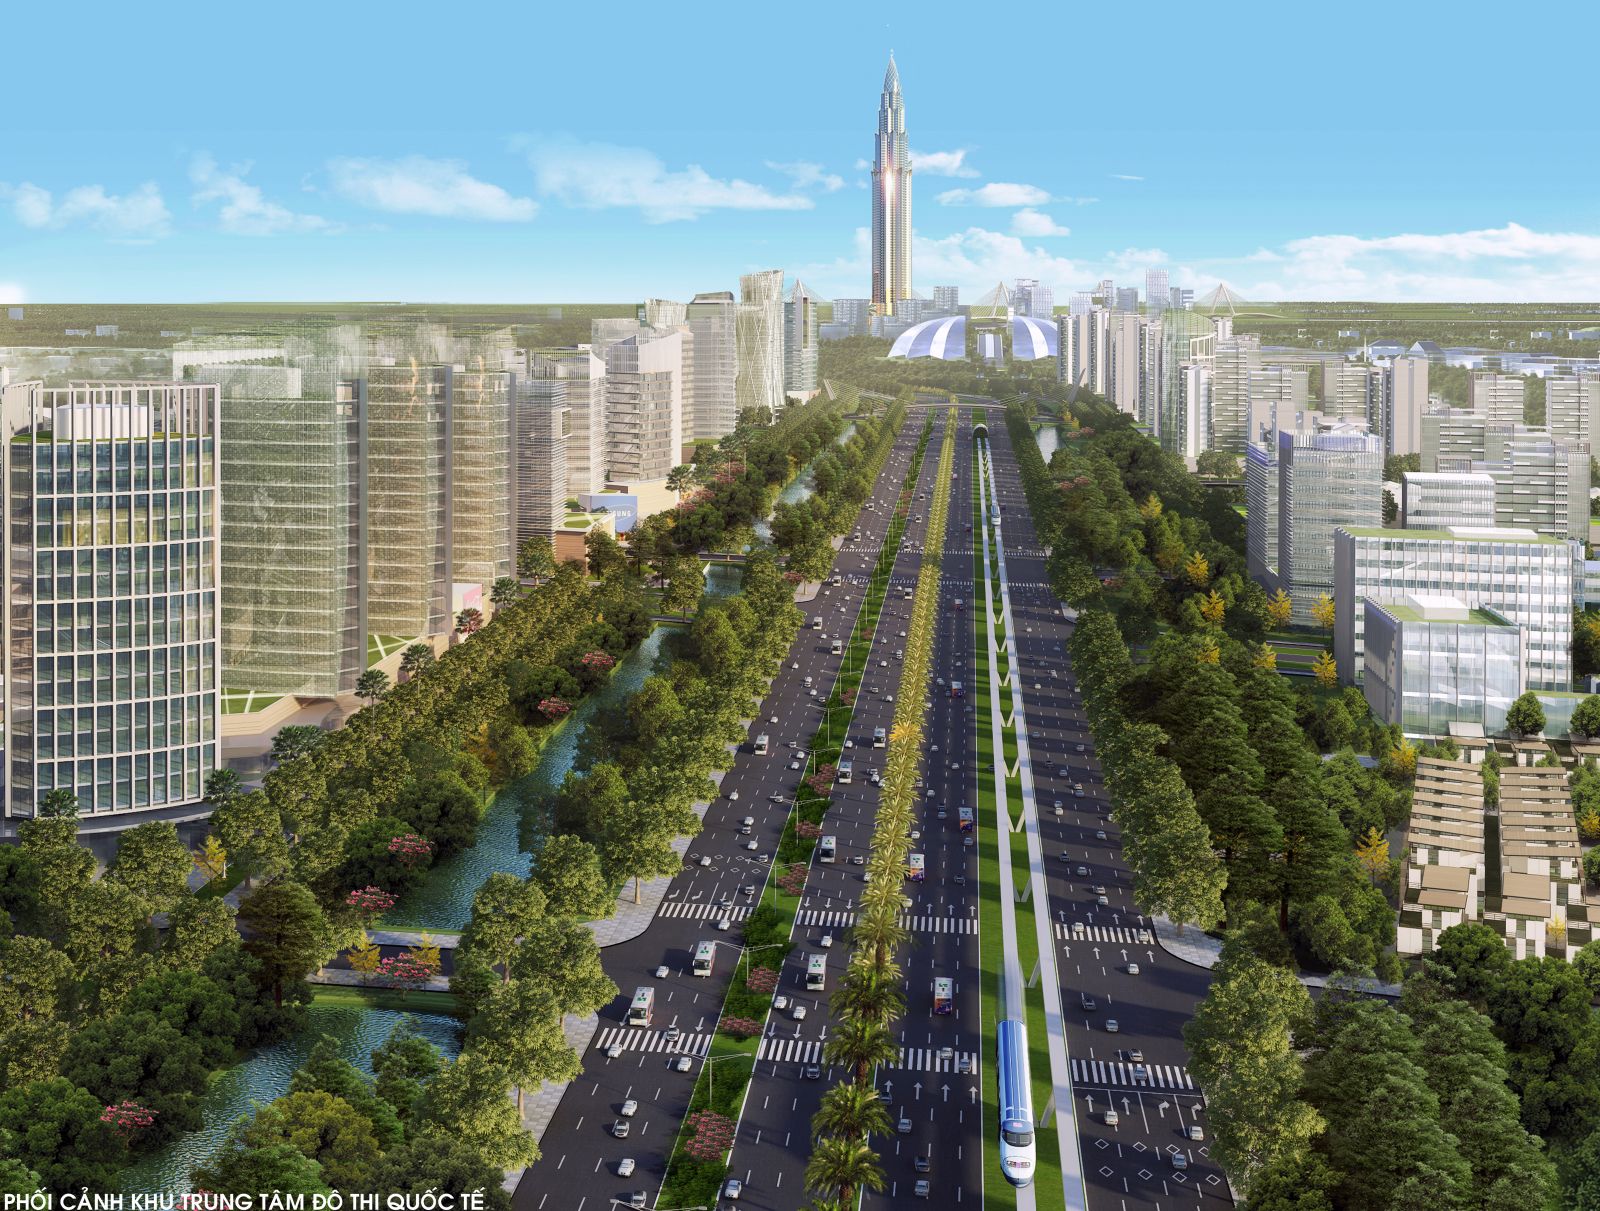 Thành phố thông minh tương lai của Hà Nội